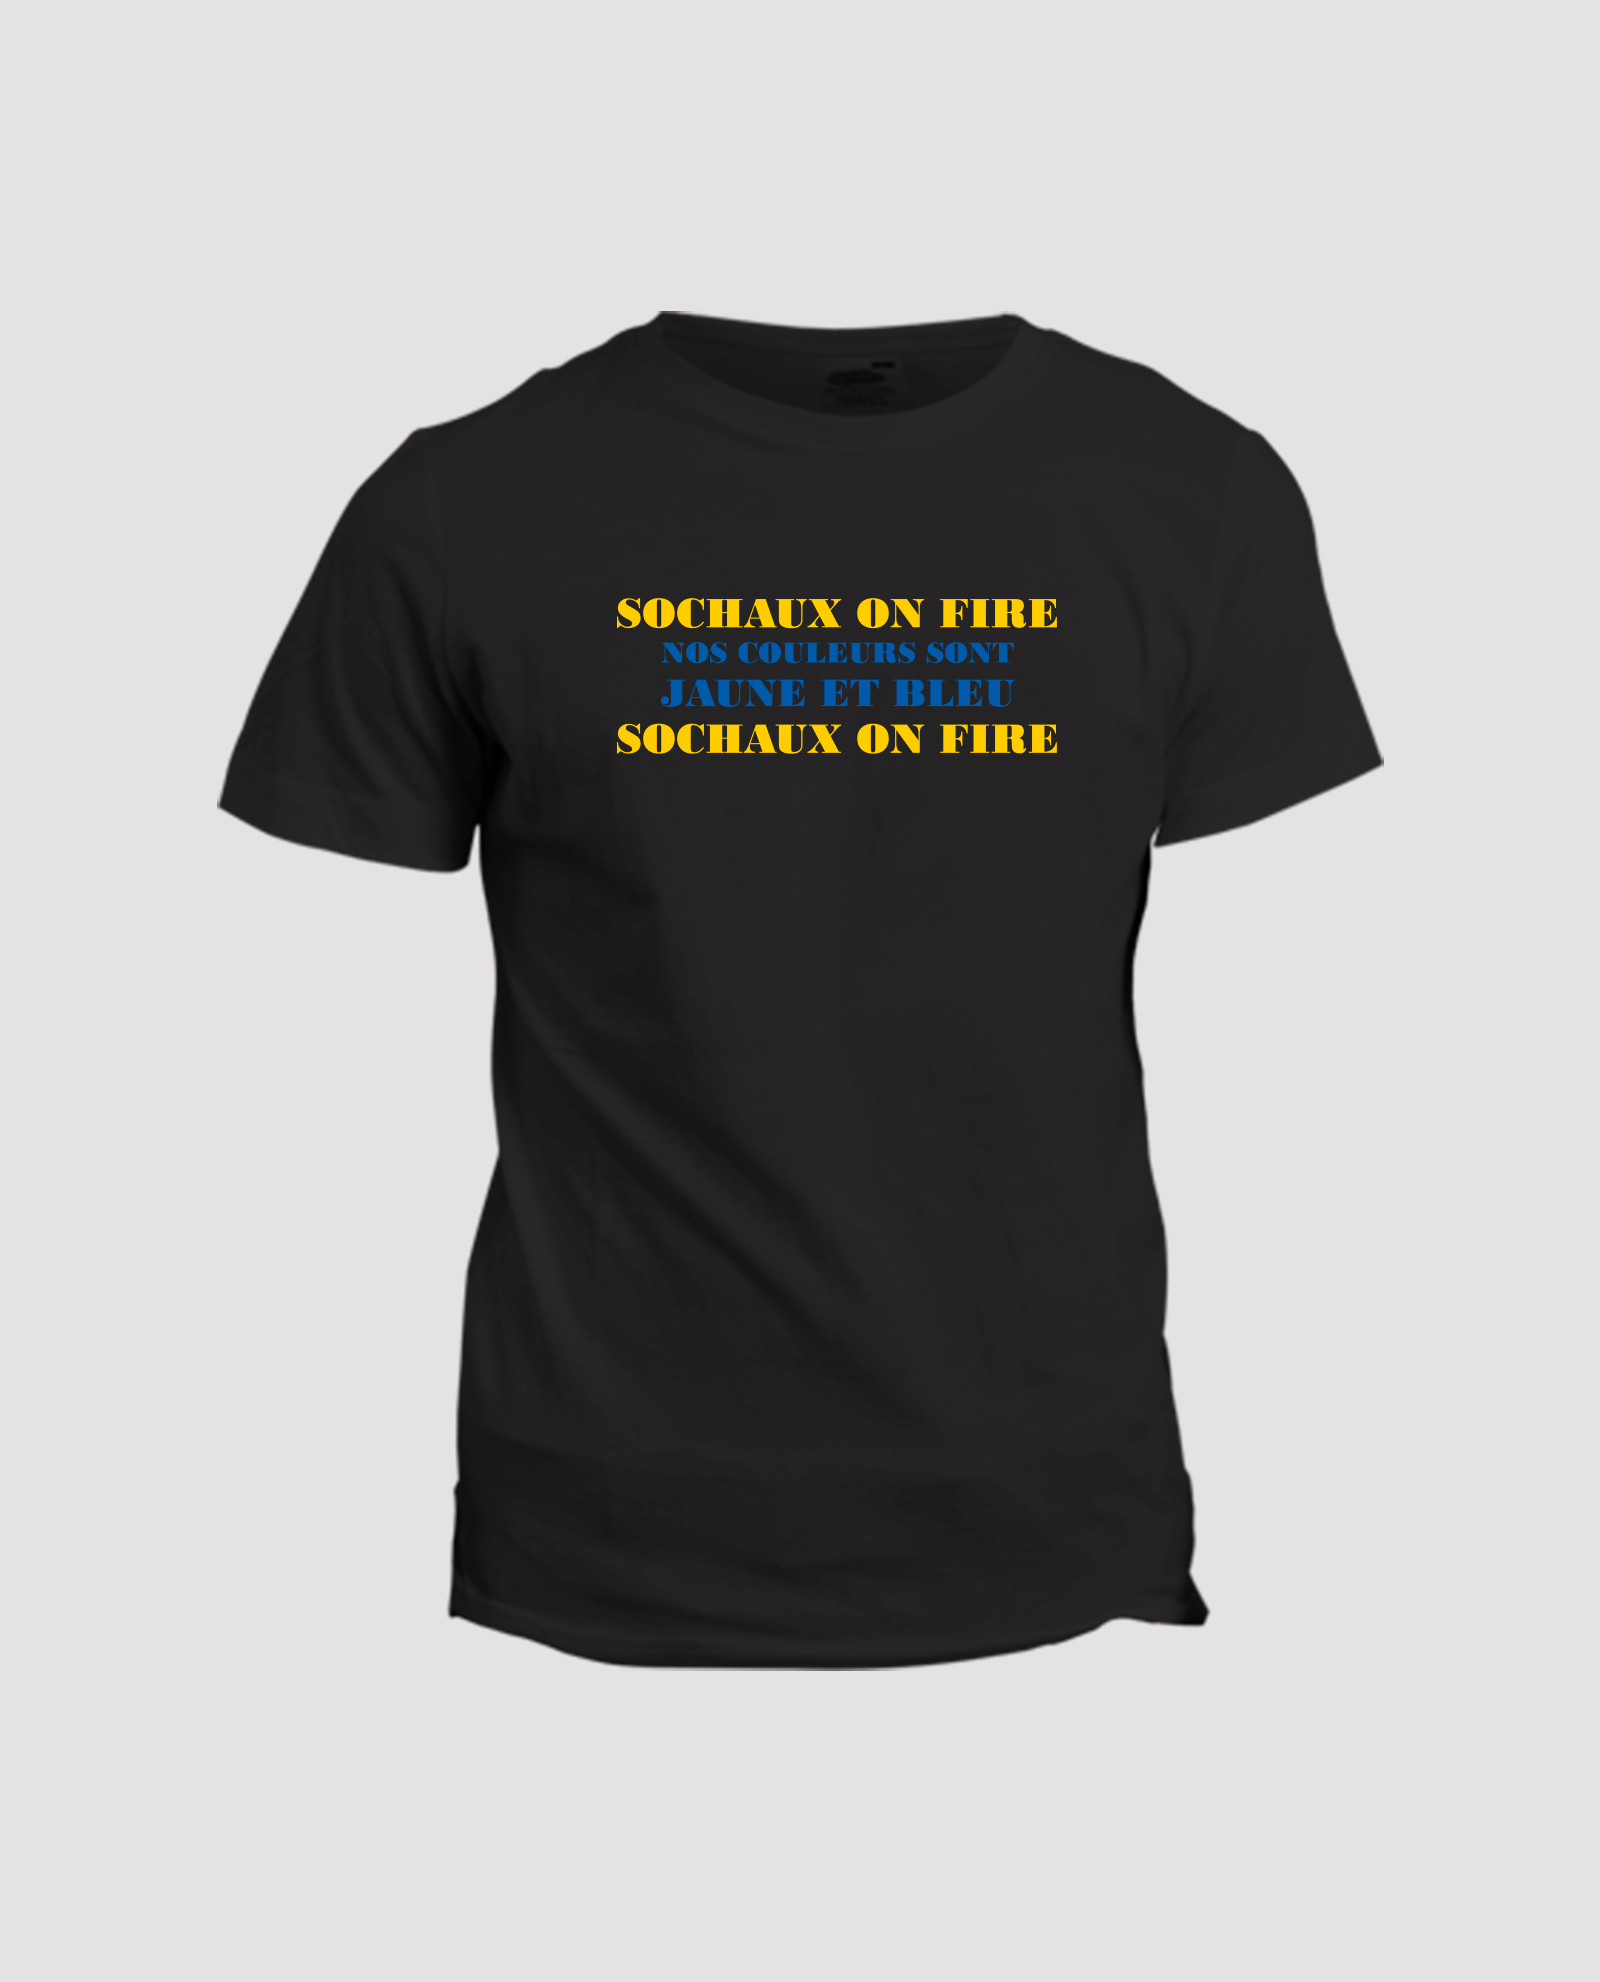 Sochaux on fire t-shirt noir